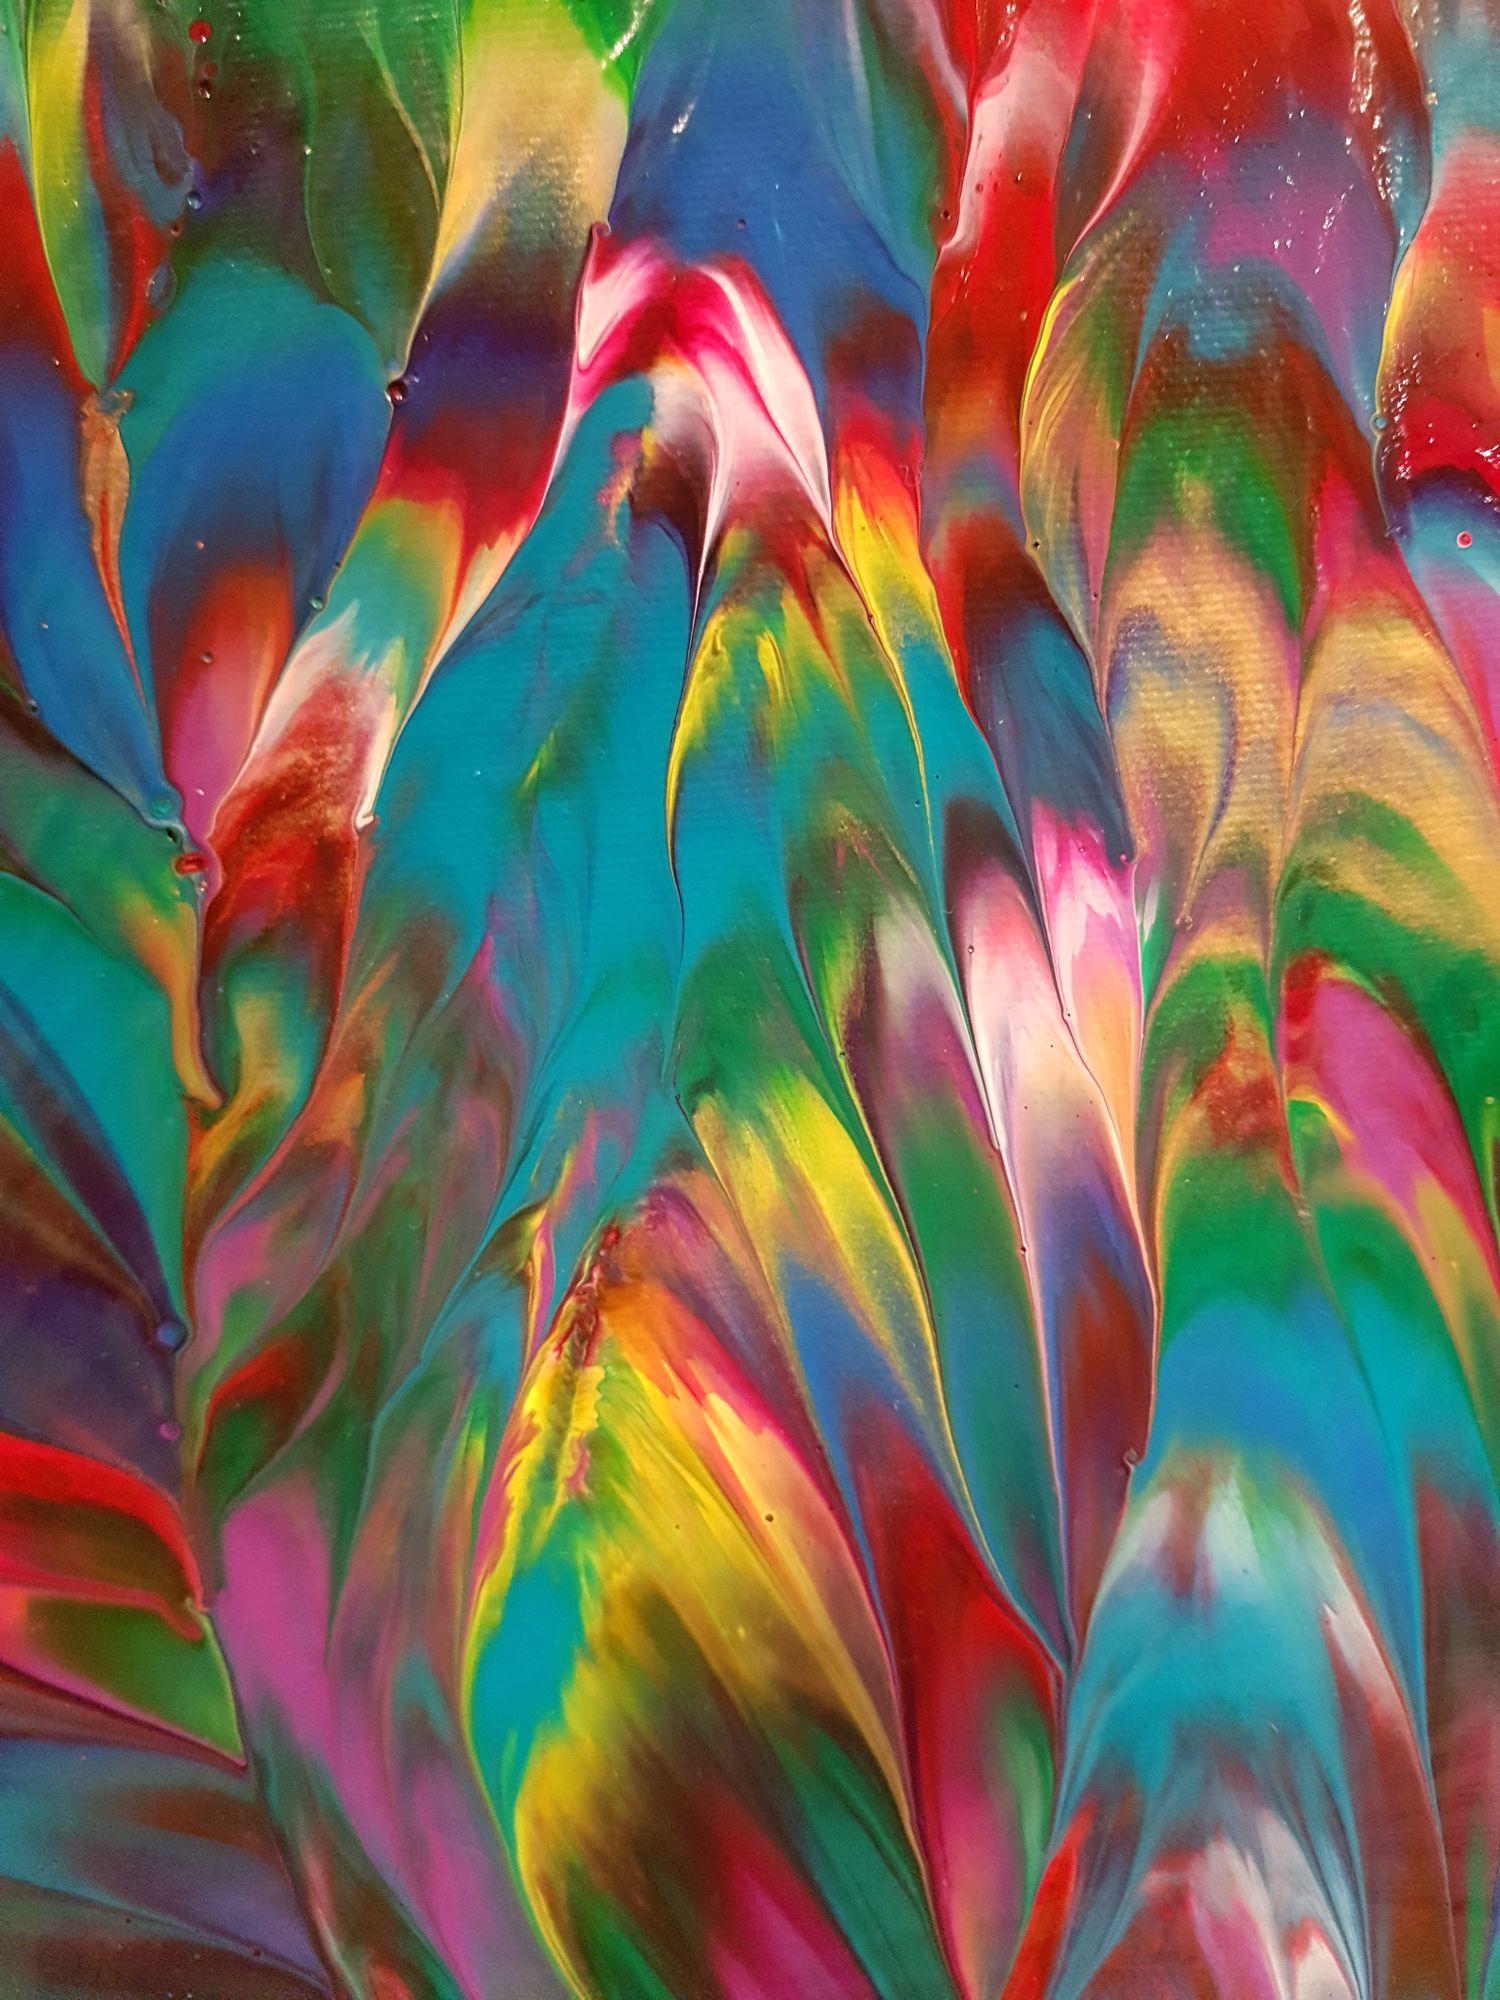 Tropical Paradise ist ein originelles abstraktes expressionistisches Gemälde mit einem dunklen smaragdgrünen Farbton und ergänzenden roten, violetten und gelben Akzenten, die für Wärme sorgen. Ein wunderschöner azurblauer Farbton verleiht diesem mit